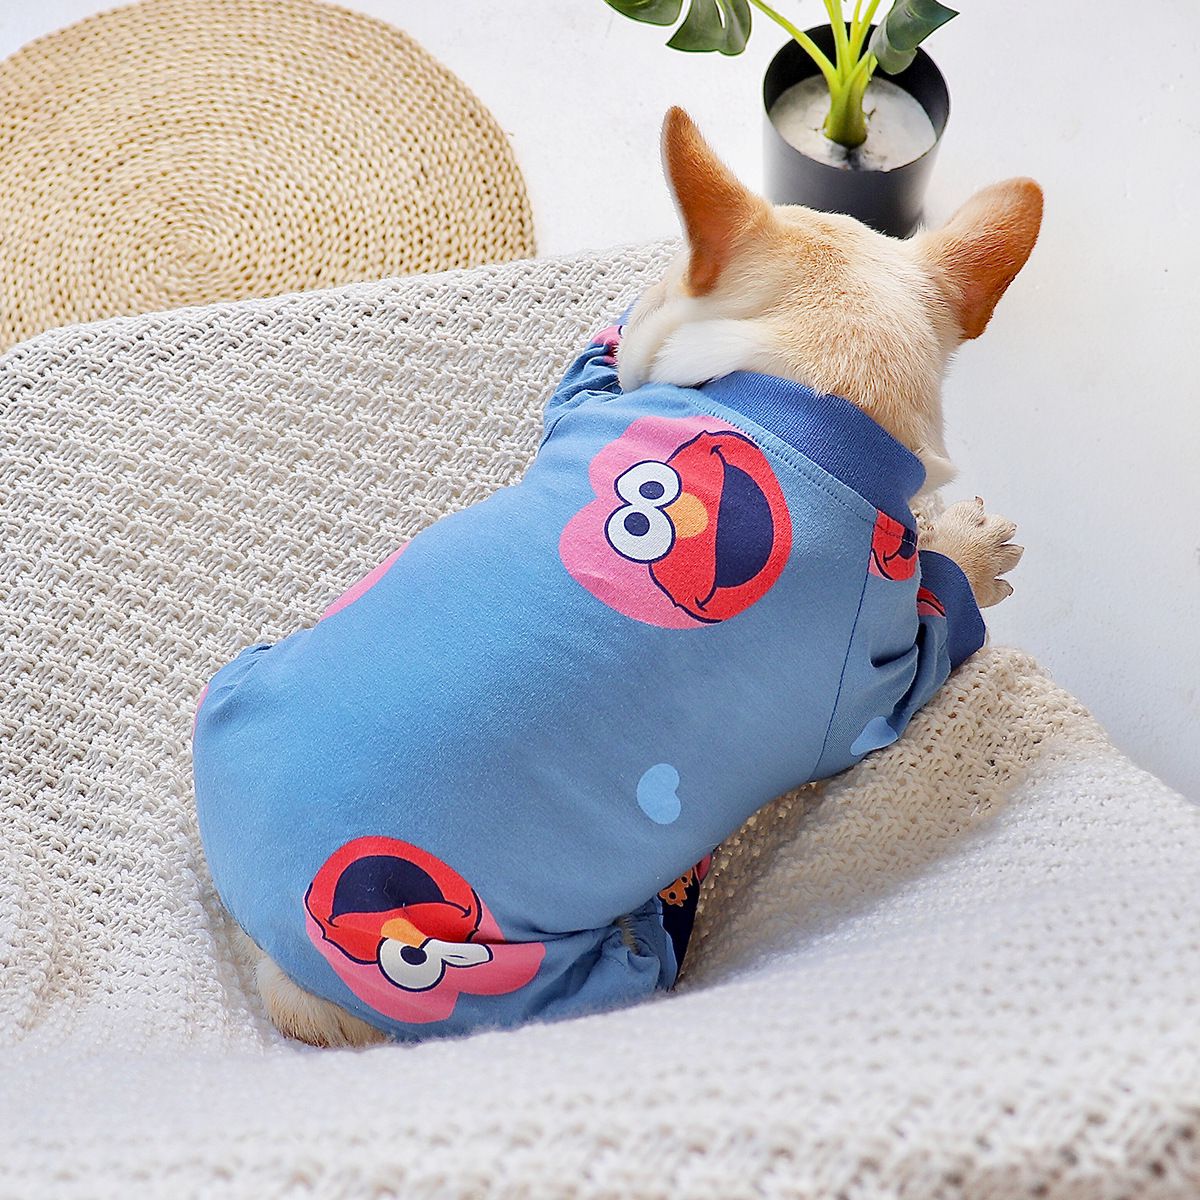 Dog Cookie Monster Pajamas